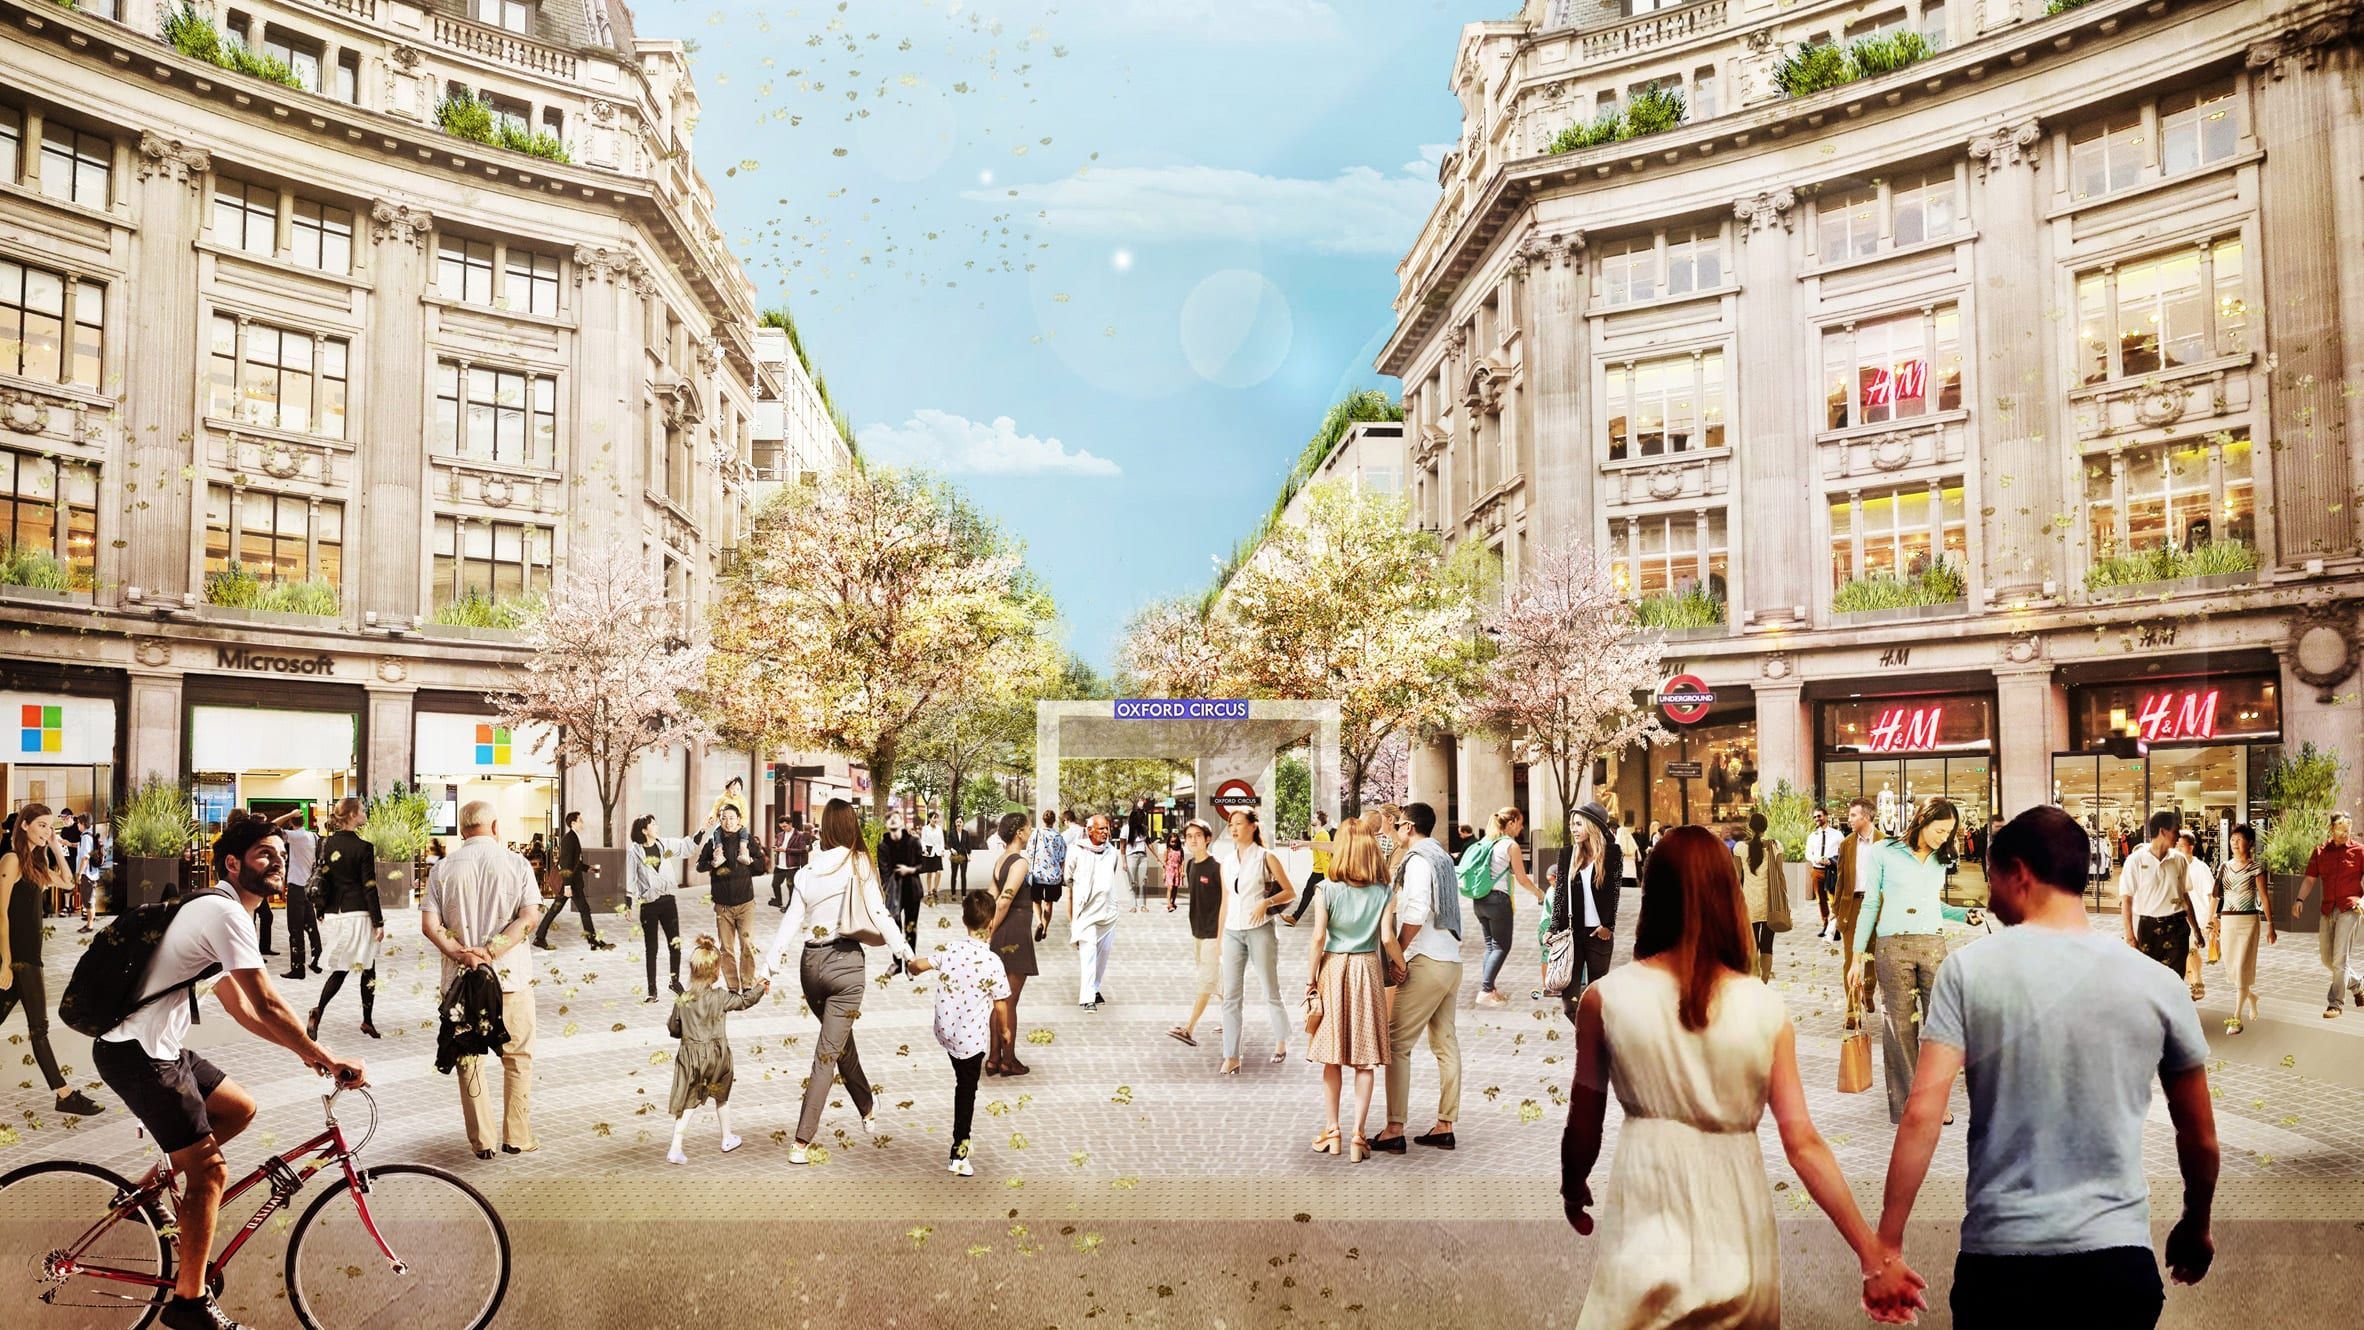 Конкурент Таймс-сквер: у Лондоні оновлять площу станції метро Oxford Circus